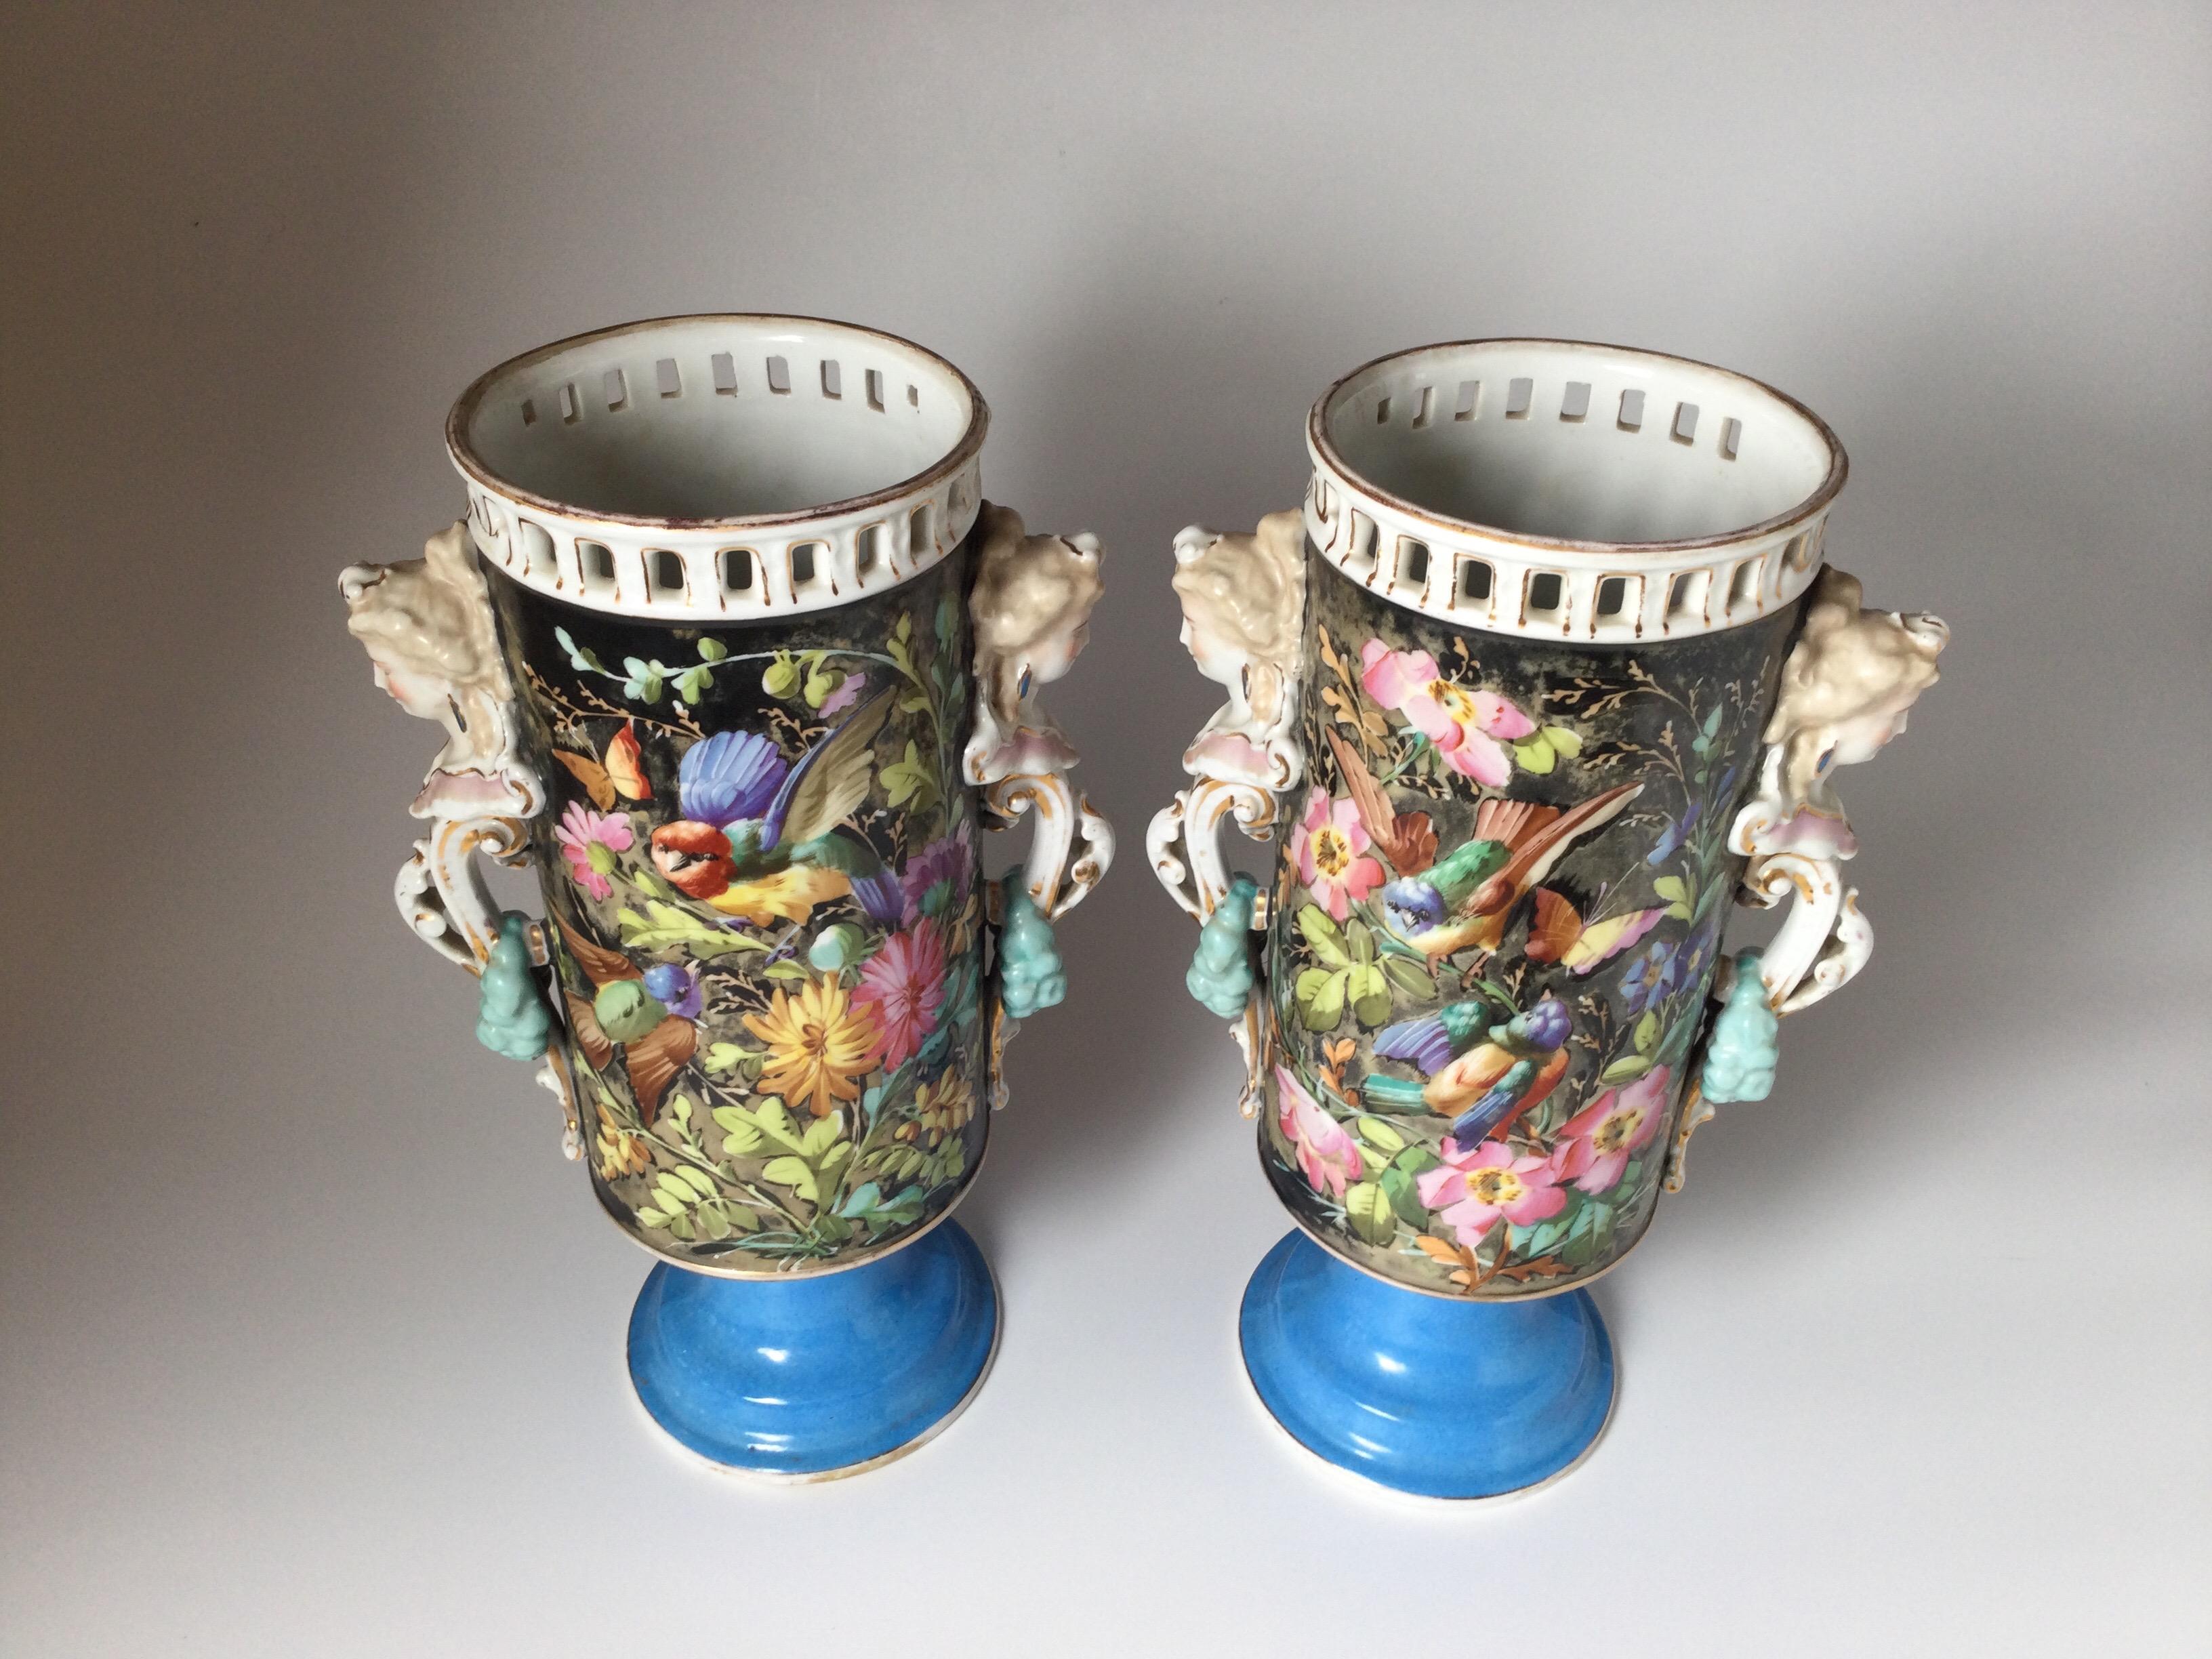 Une grande paire de vases à deux anses en porcelaine de Paris à décor floral et d'oiseaux. Les bords à bordure réticulée avec anses à figures féminines reposant sur une base à piédestal bleu céleste.